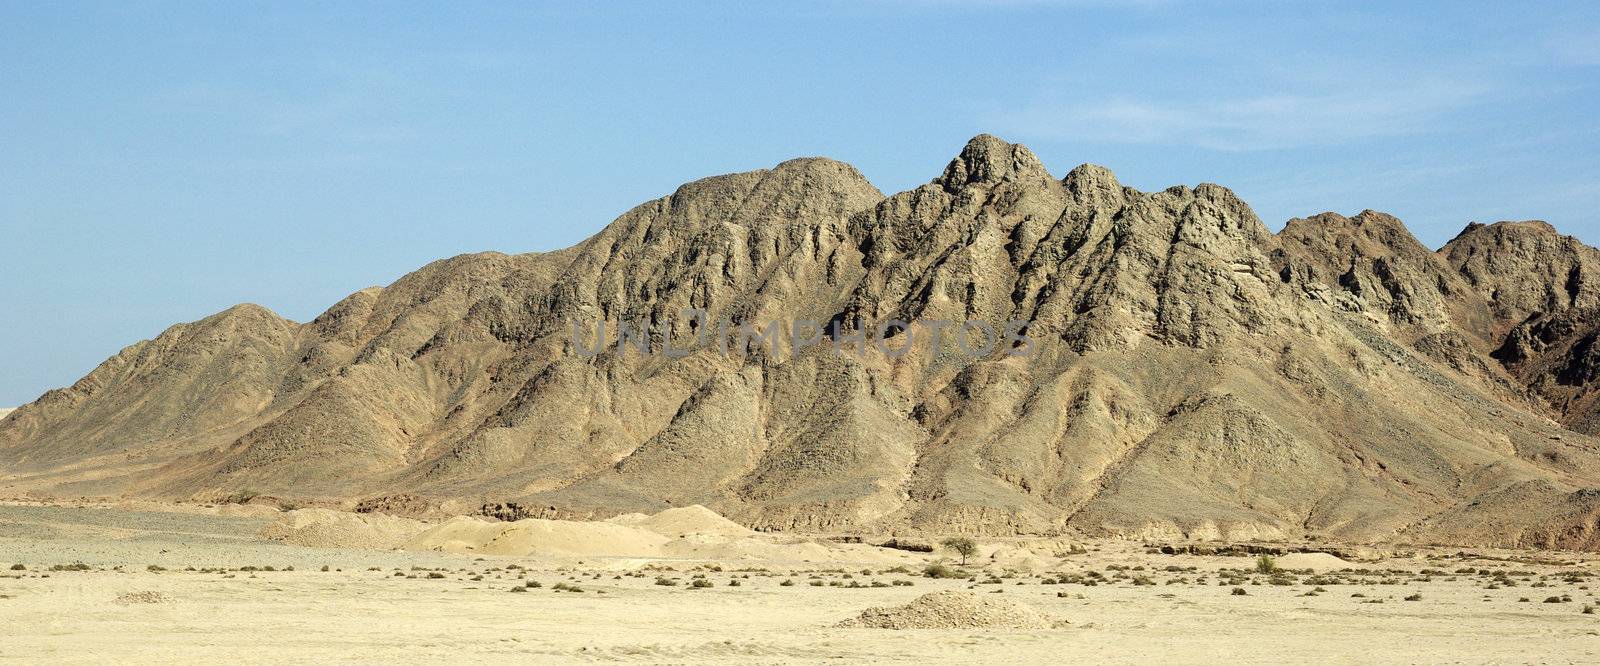 Mountain landscape in egyptian desert. Panaromic.